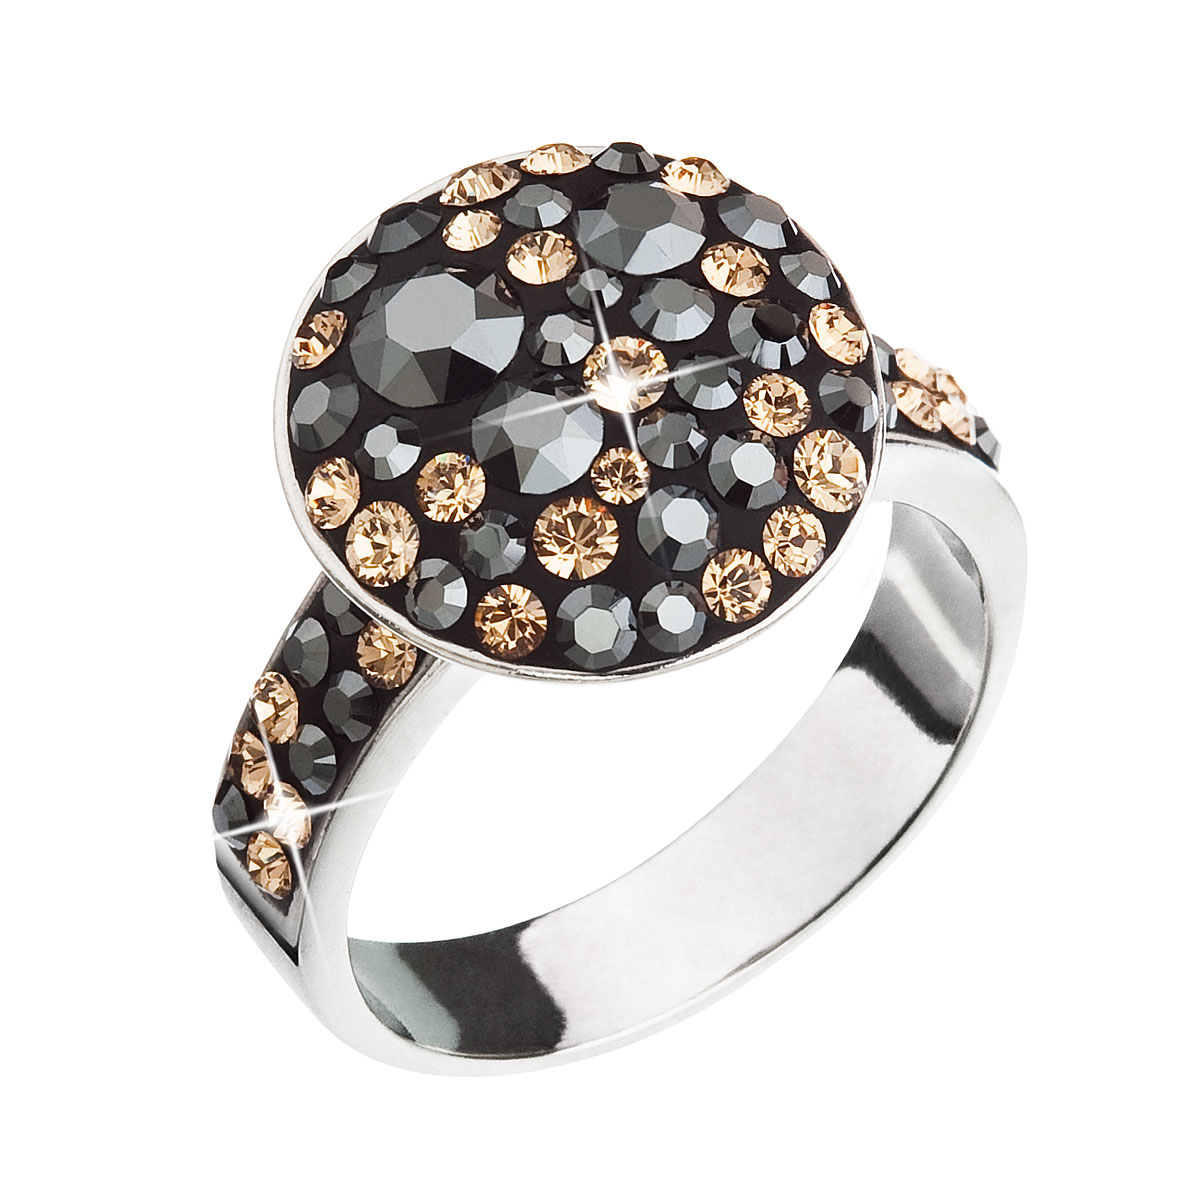 Evolution Group Stříbrný prsten s krystaly Swarovski zlato černý 35054.4 colorado